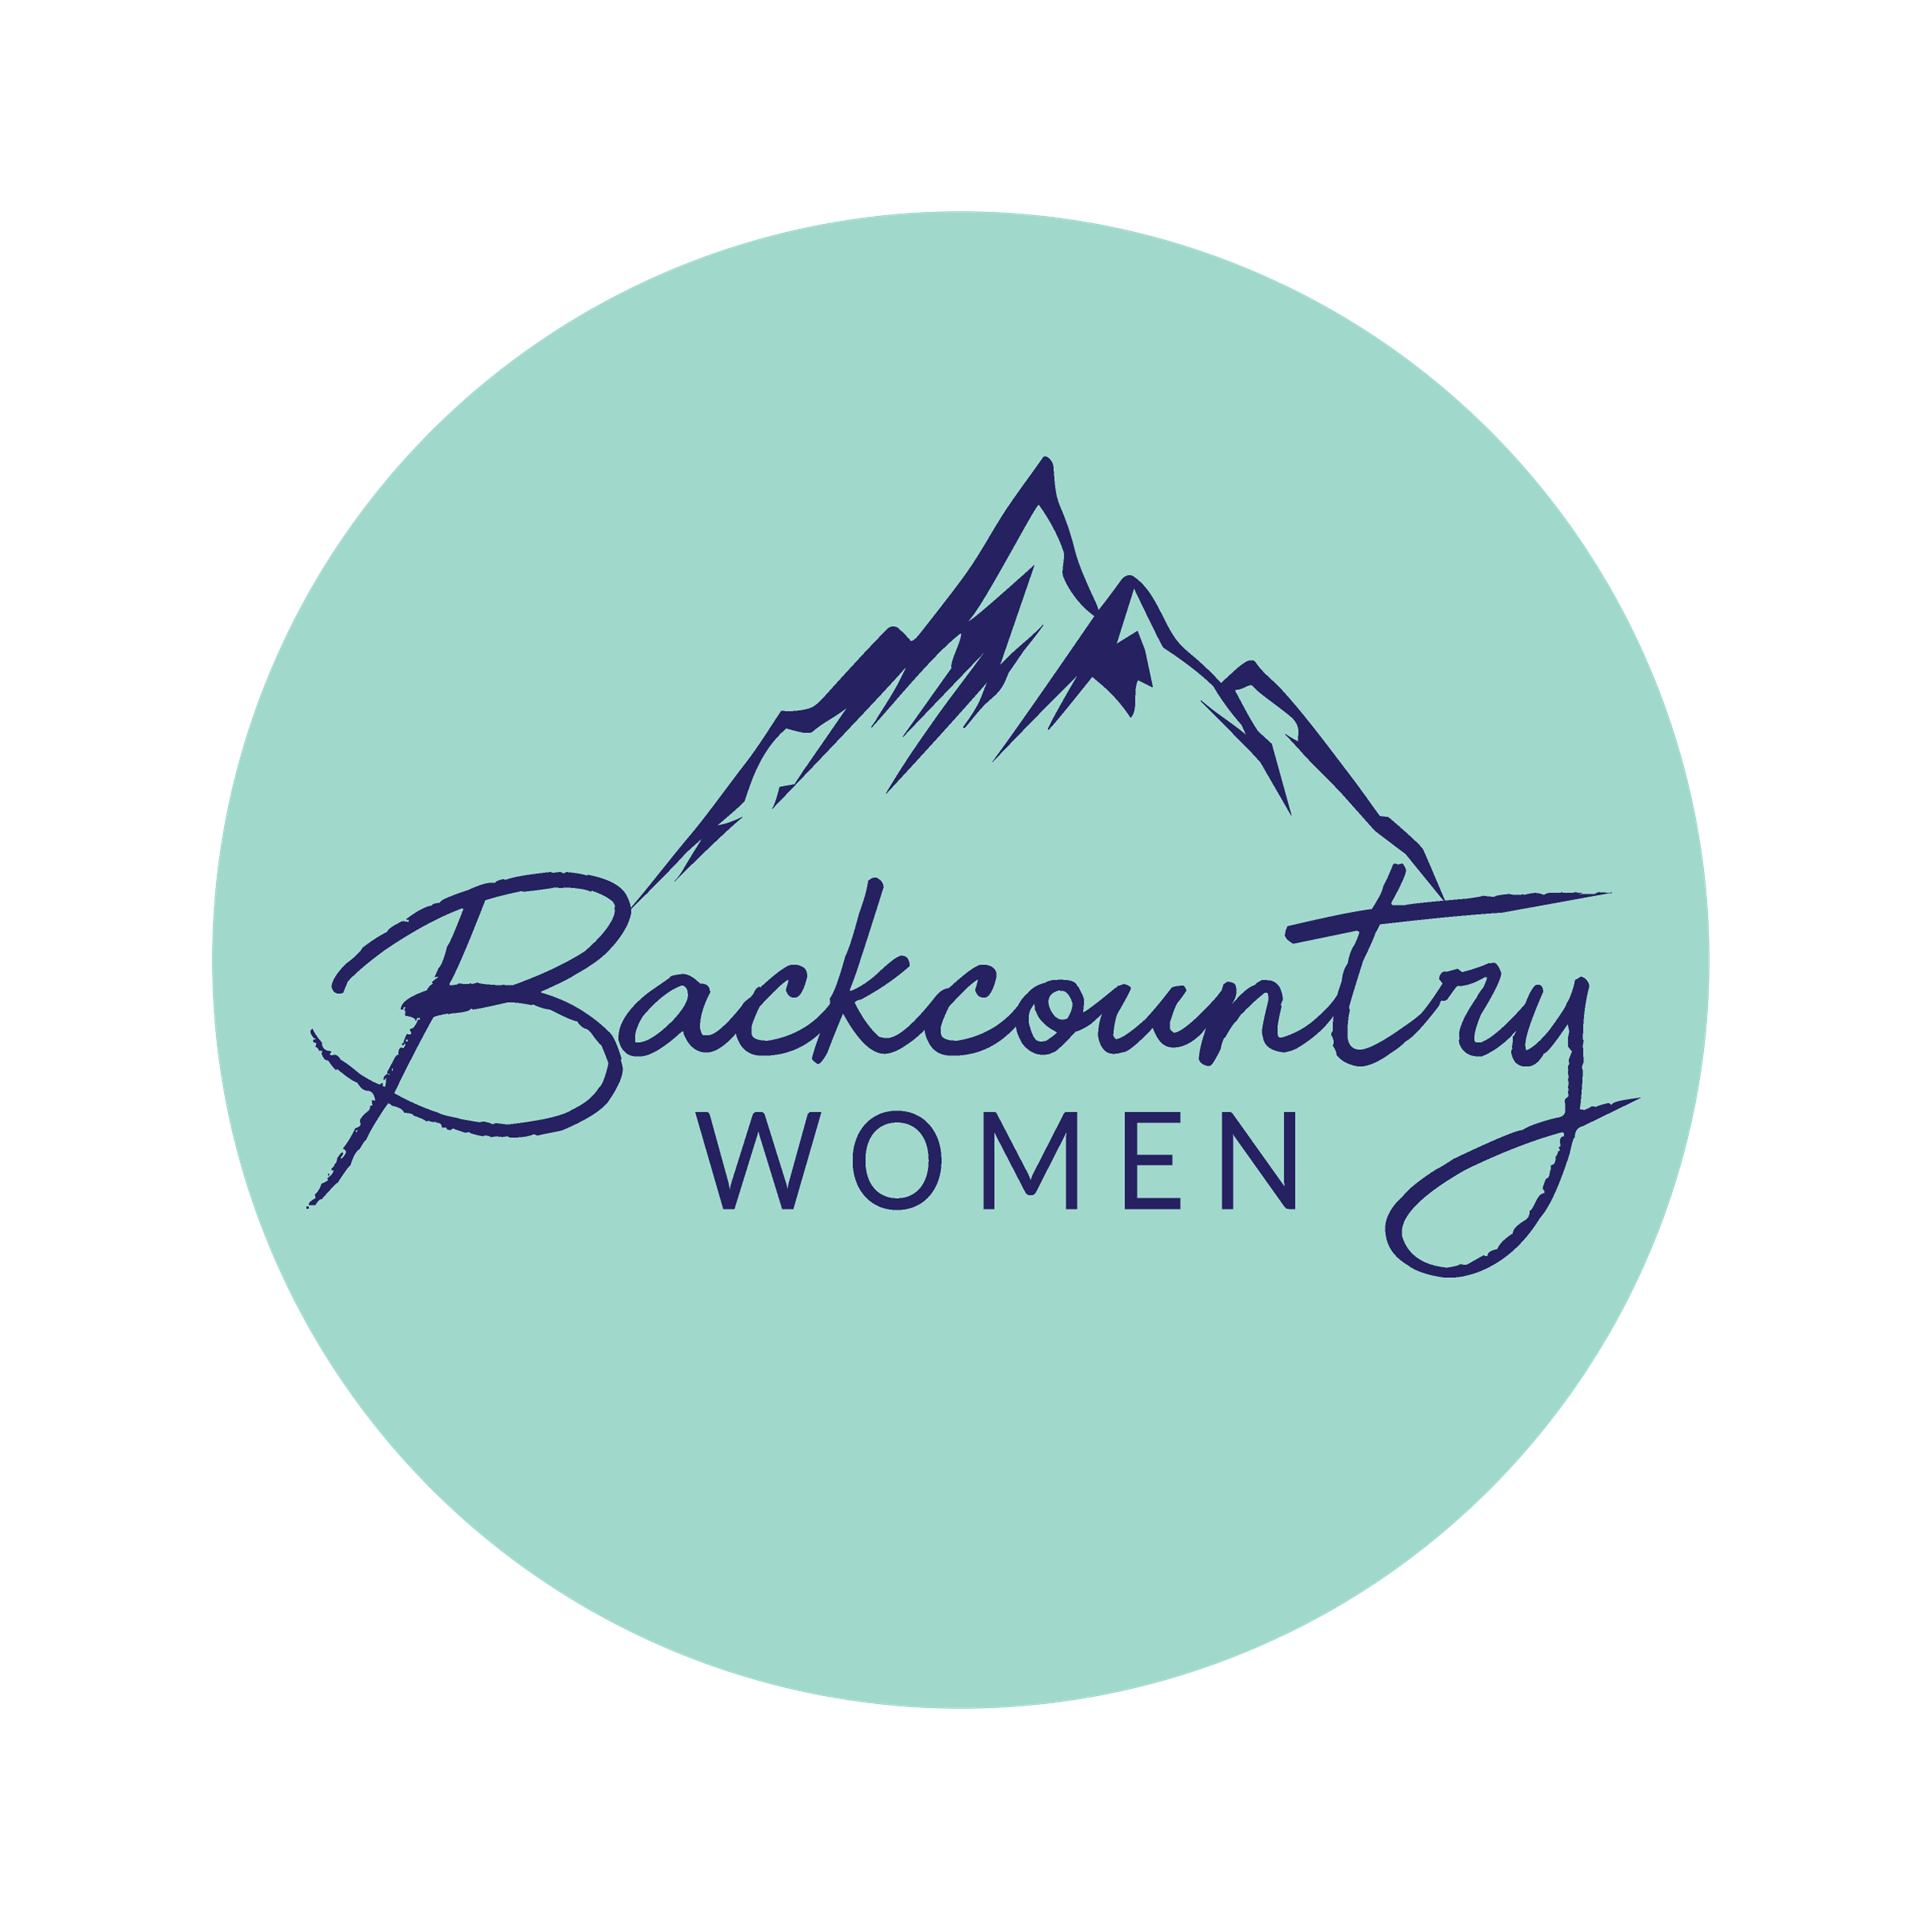 Backcountry Women